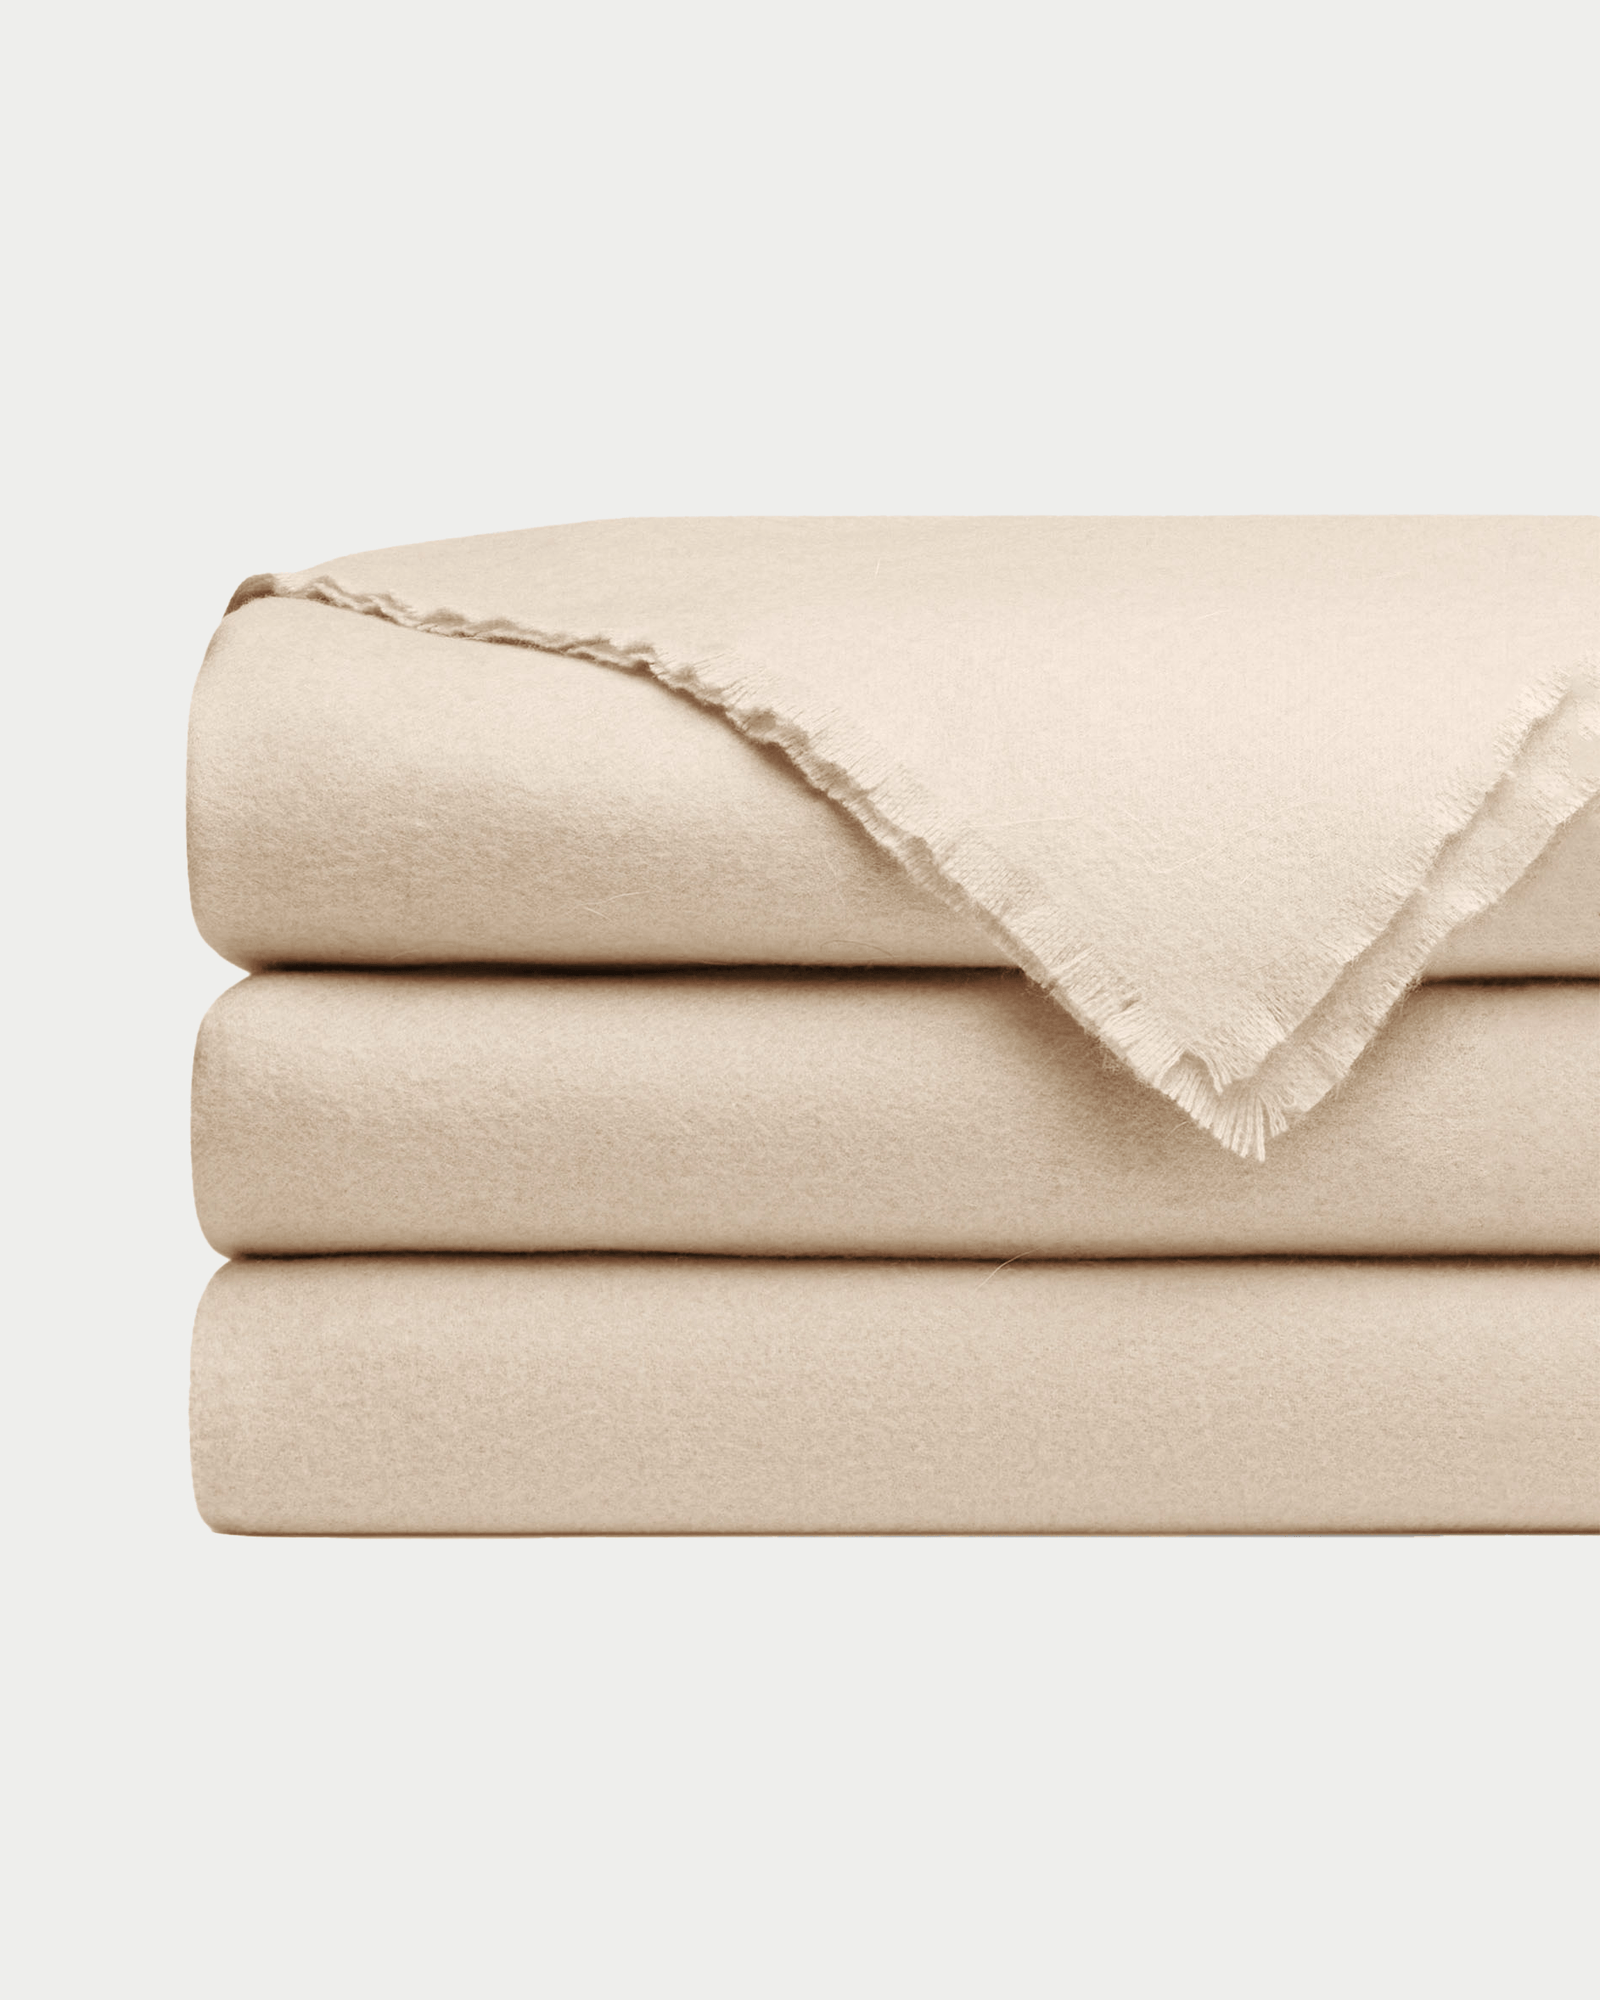 Dune cashmere fringe blanket folded with white background 